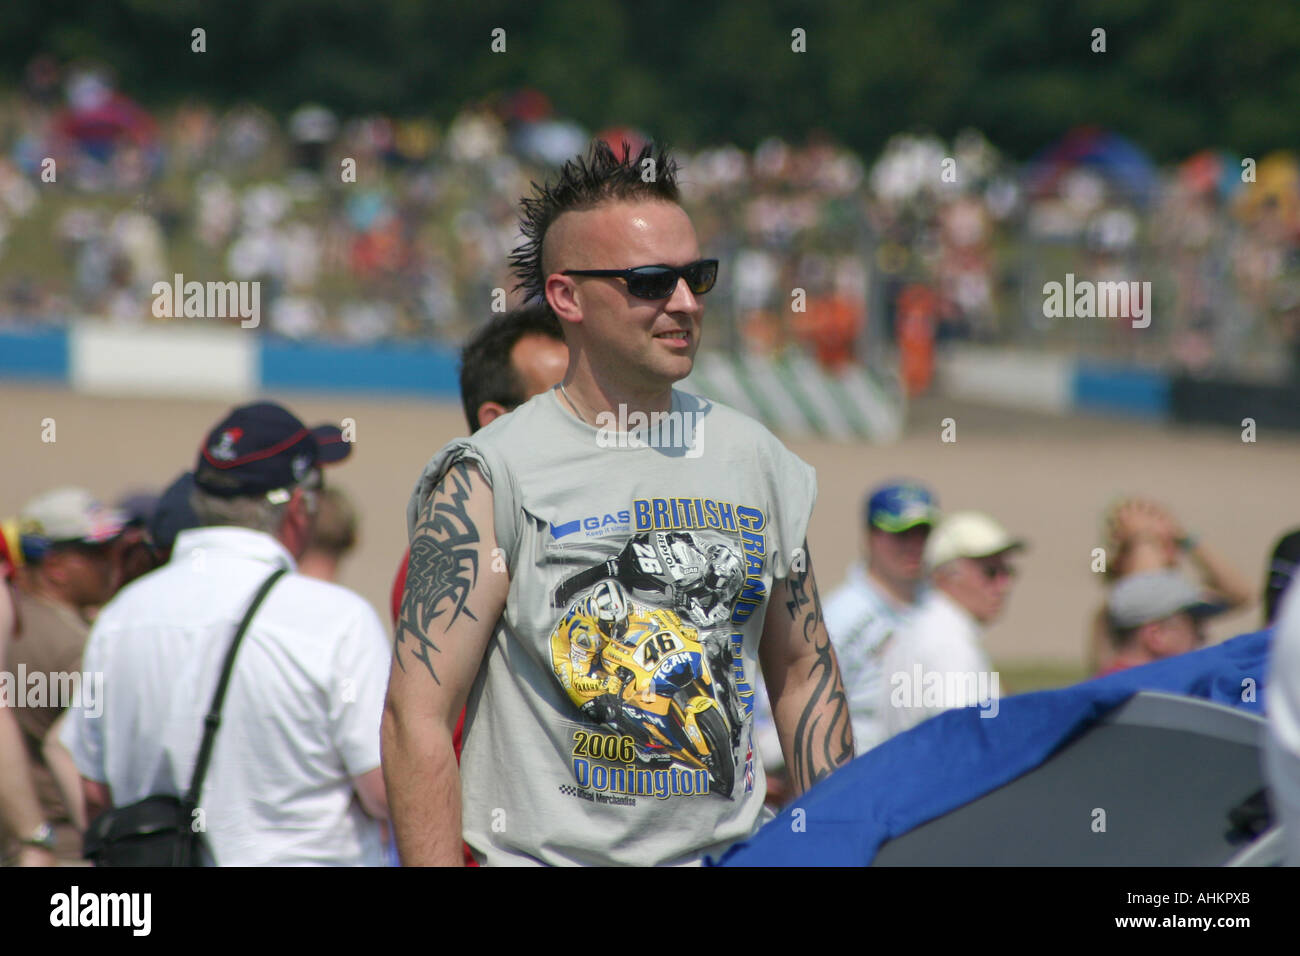 Mann bei Rennen Motorradtreffen mit Irokesenschnitt Frisur, Tattoos und Rossi Shirt. Stockfoto